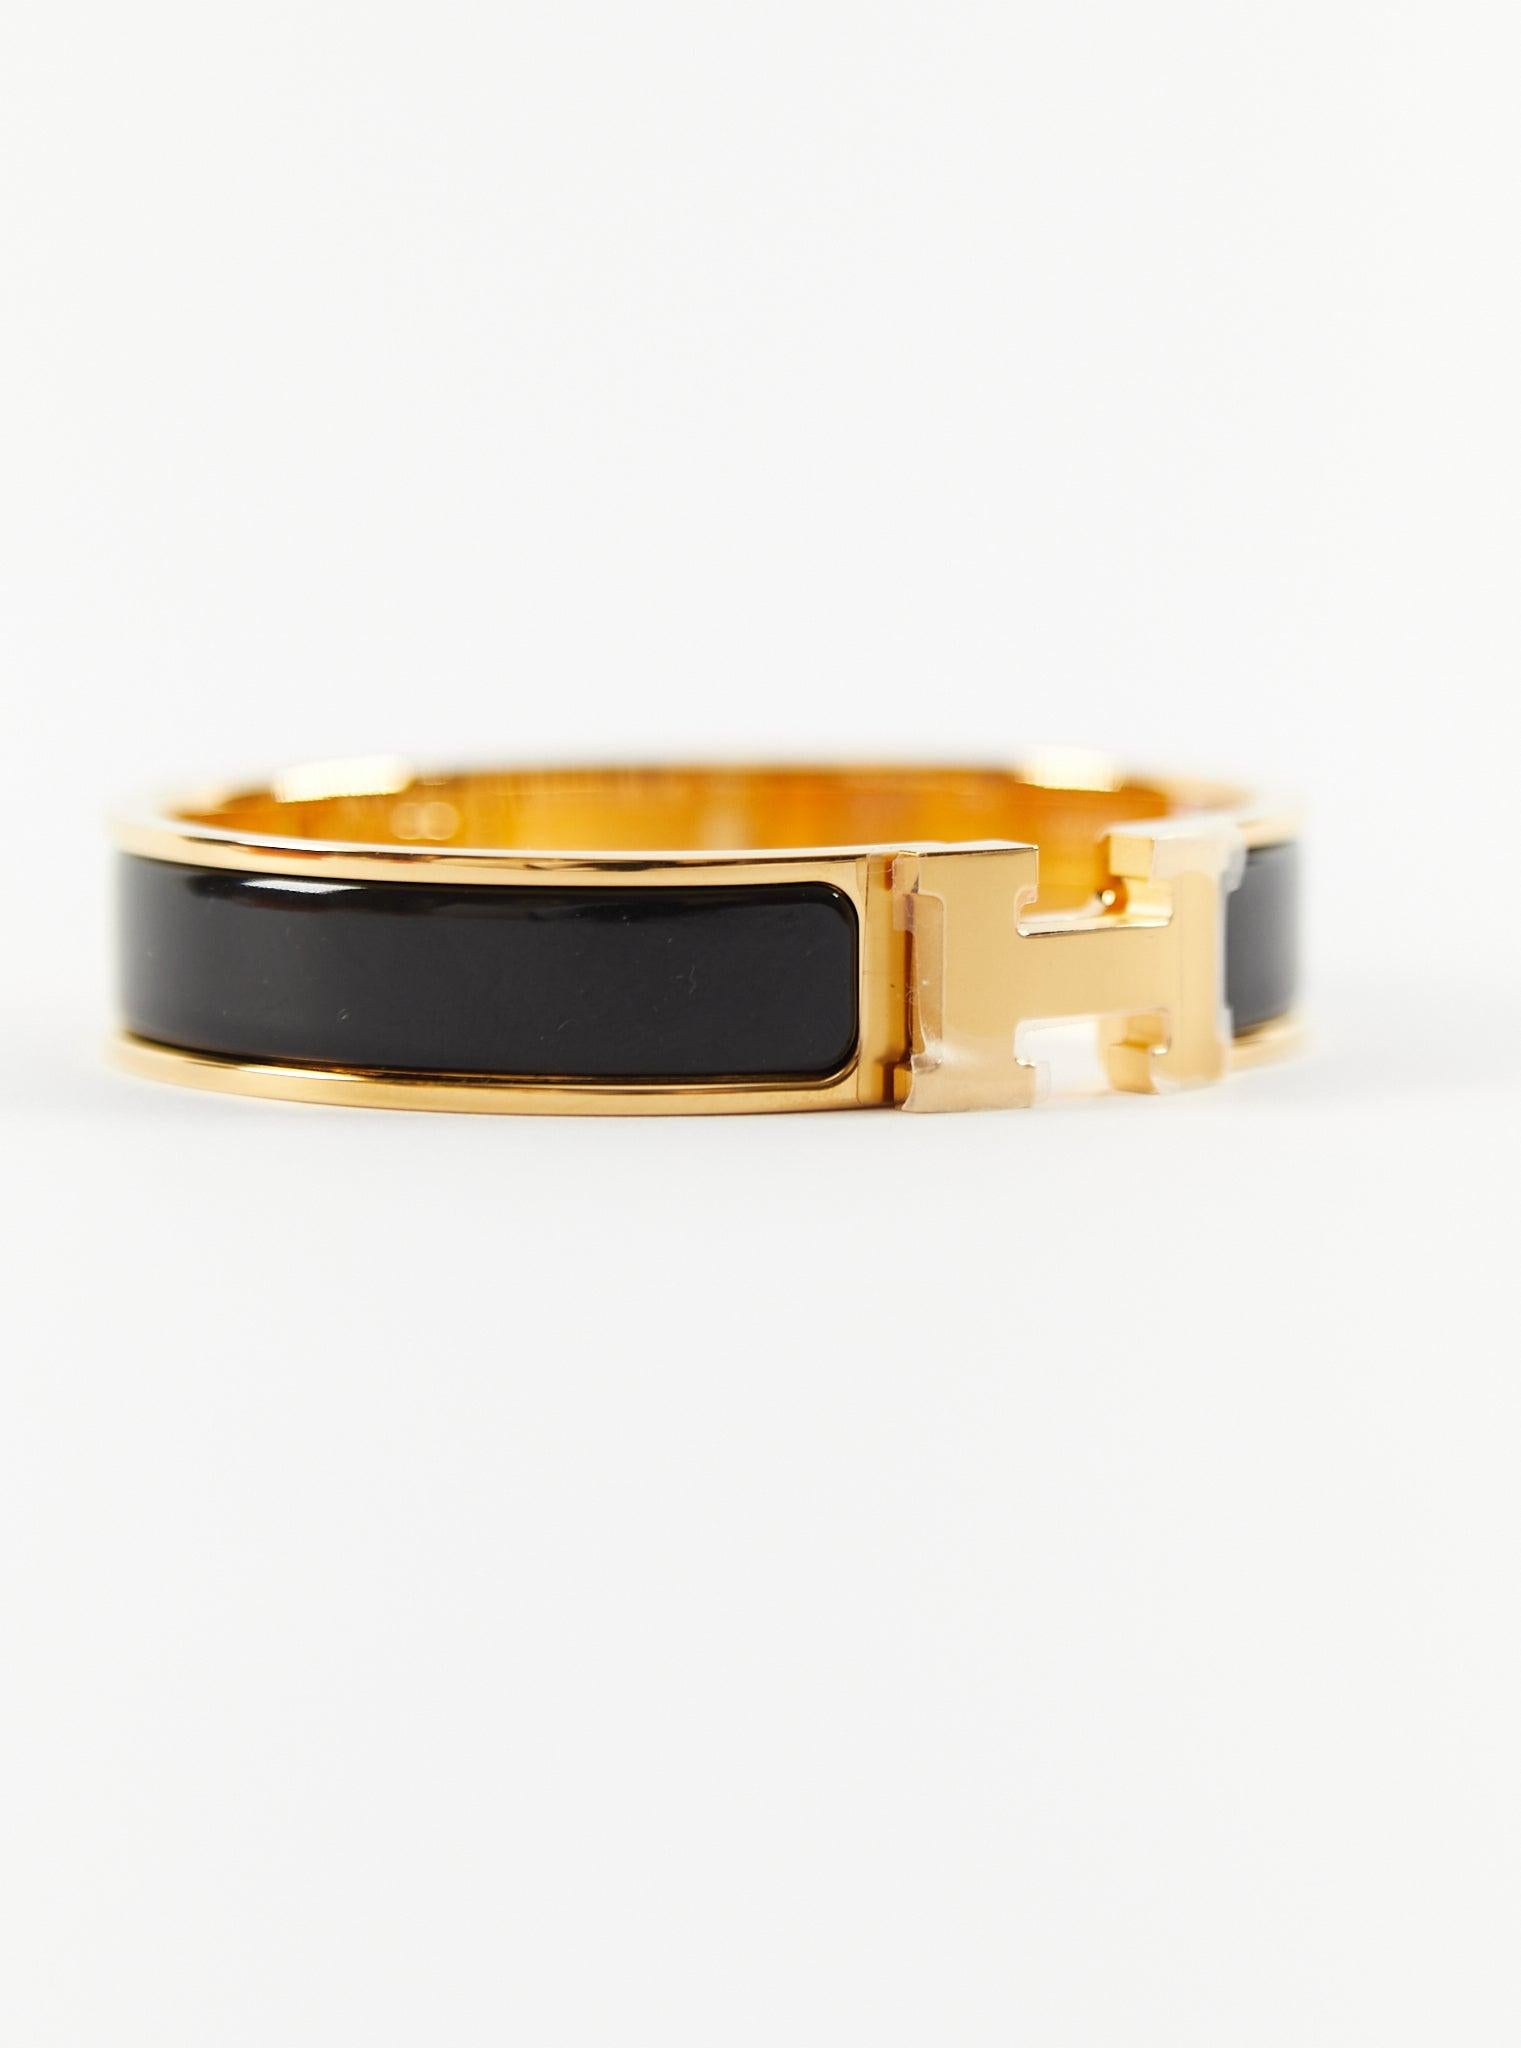 Hermès Clic H PM-Armband in Schwarz und Gold

Größe des Handgelenks: 16.8 cm  Breite: 12 mm

Hergestellt in Frankreich